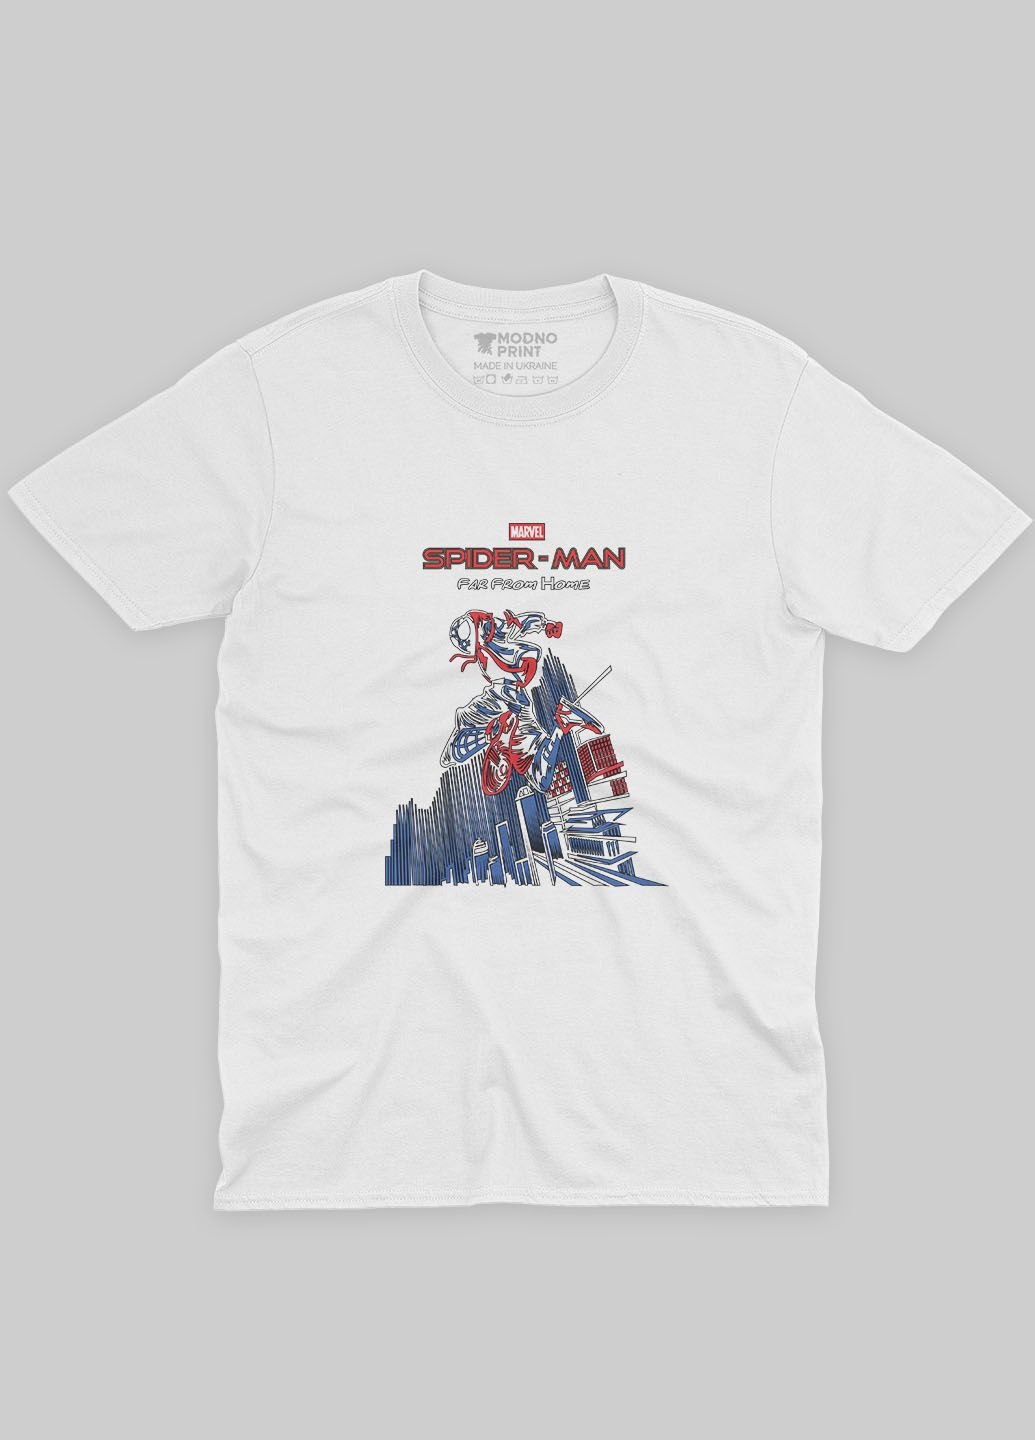 Белая демисезонная футболка для девочки с принтом супергероя - человек-паук (ts001-1-whi-006-014-041-g) Modno